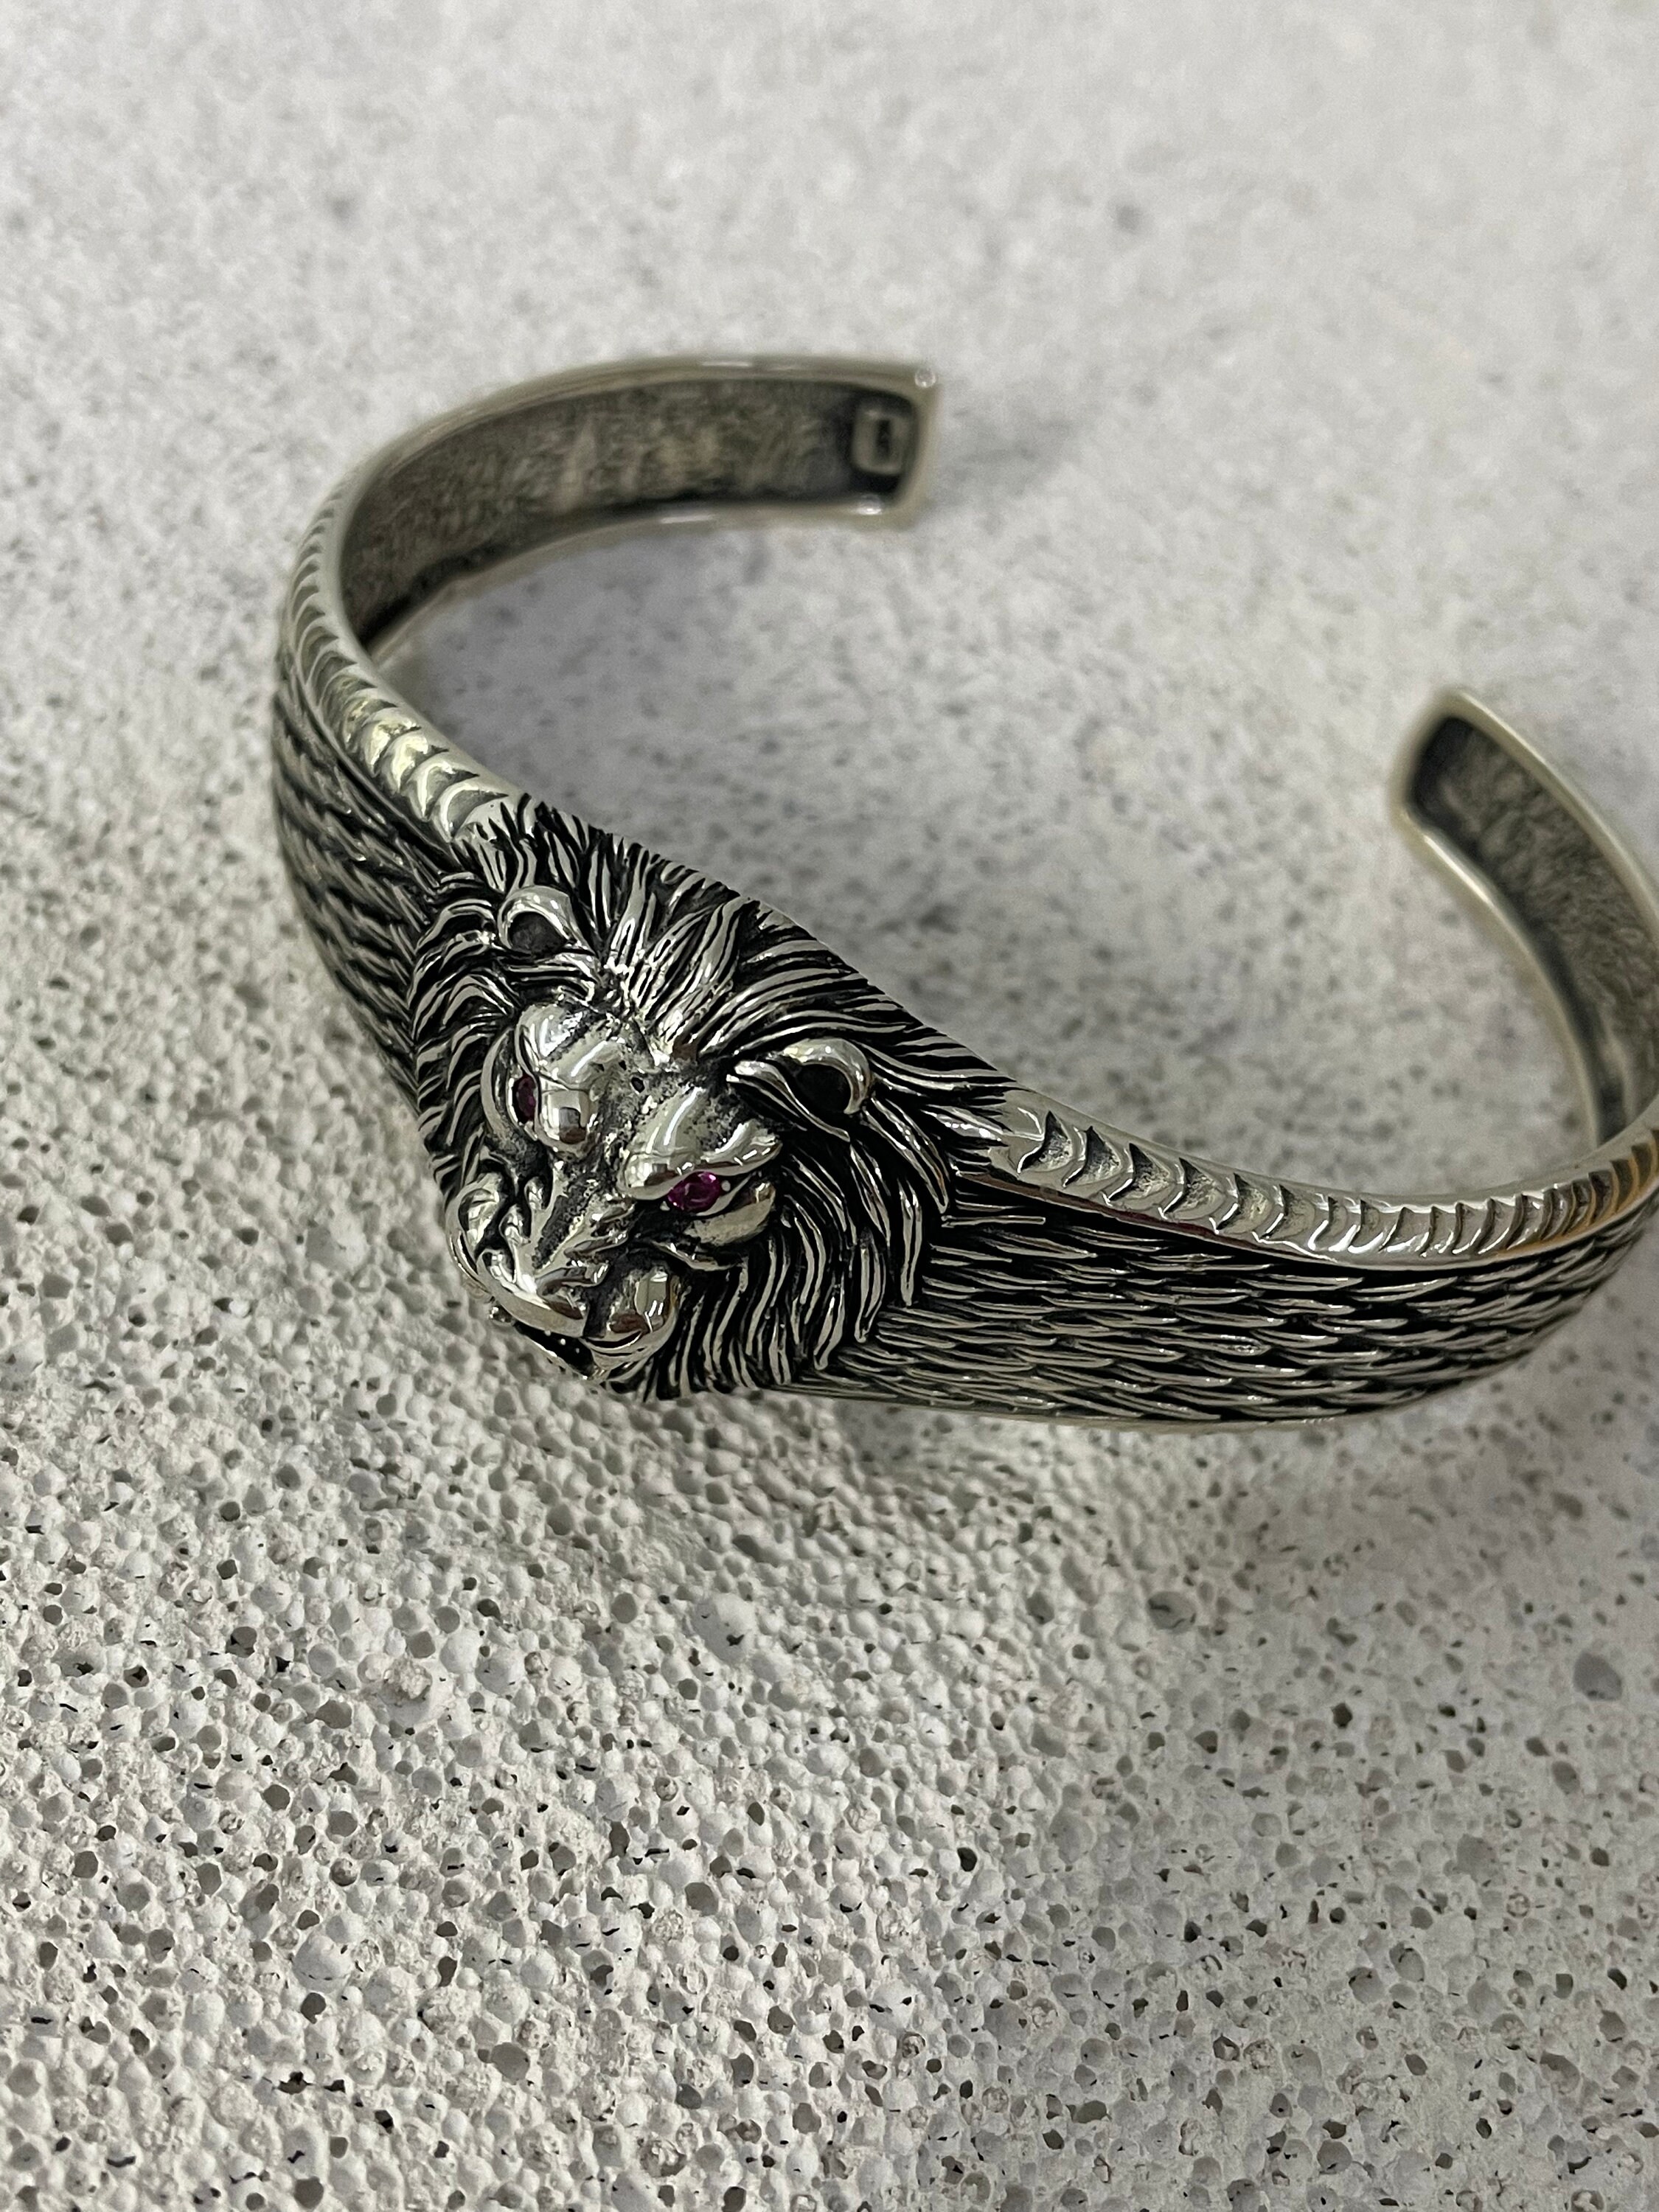 Lion Bracelet in Sterling Silver 925. - Etsy Norway